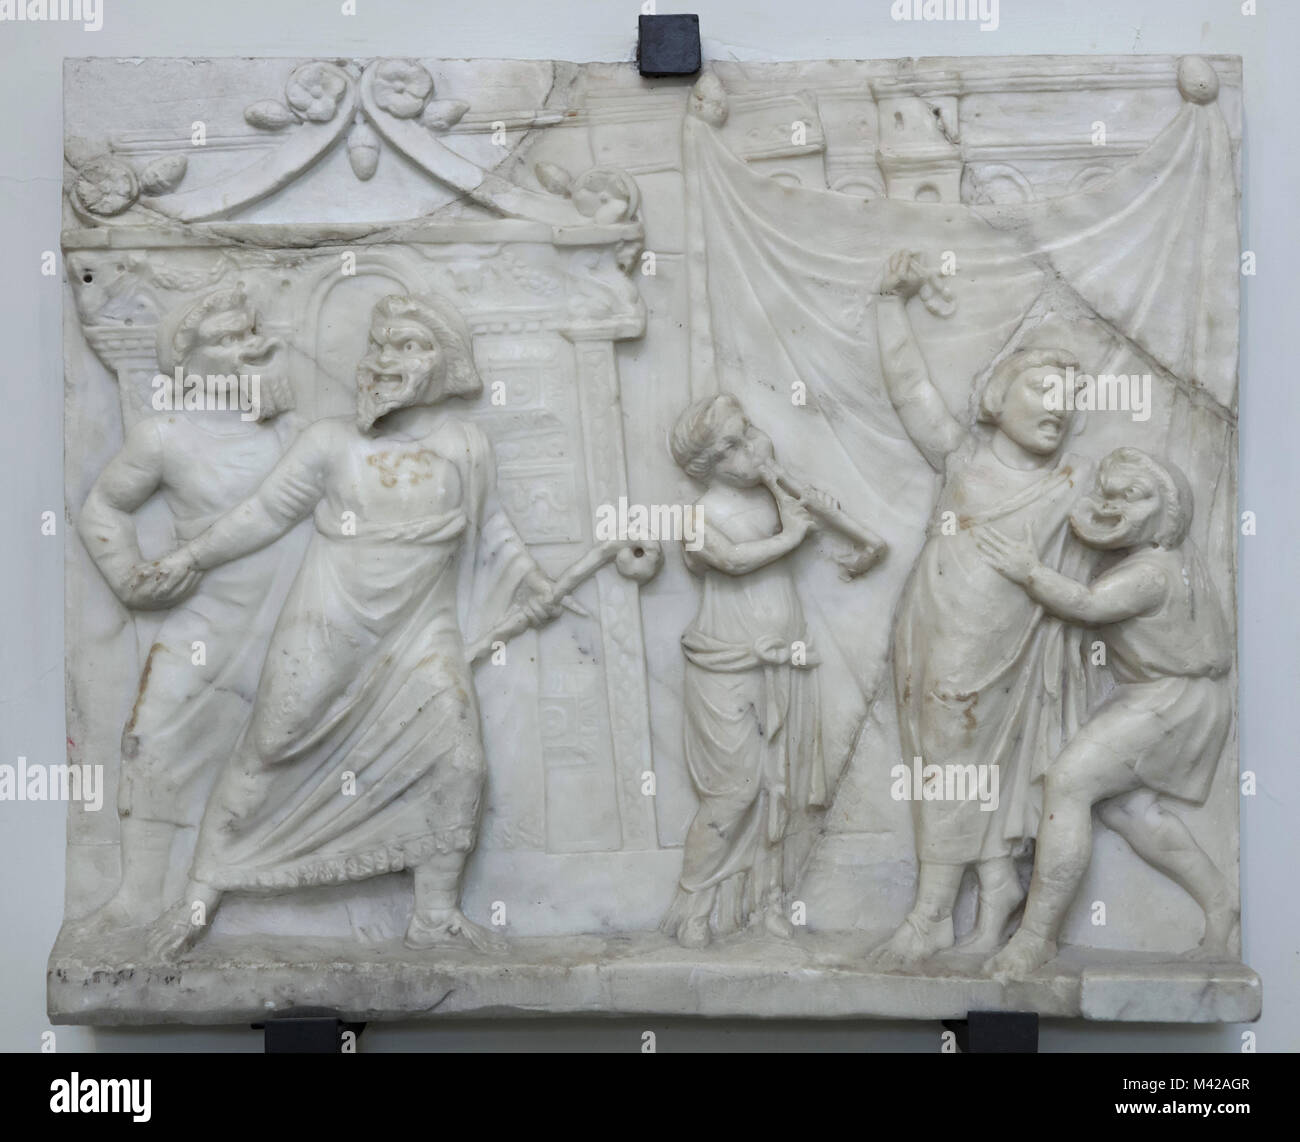 Scena teatrale rappresentata in età romana rilievo marmoreo del primo secolo D.C. da Collezione Farnese in mostra al Museo Archeologico Nazionale di Napoli, campania, Italy. Foto Stock